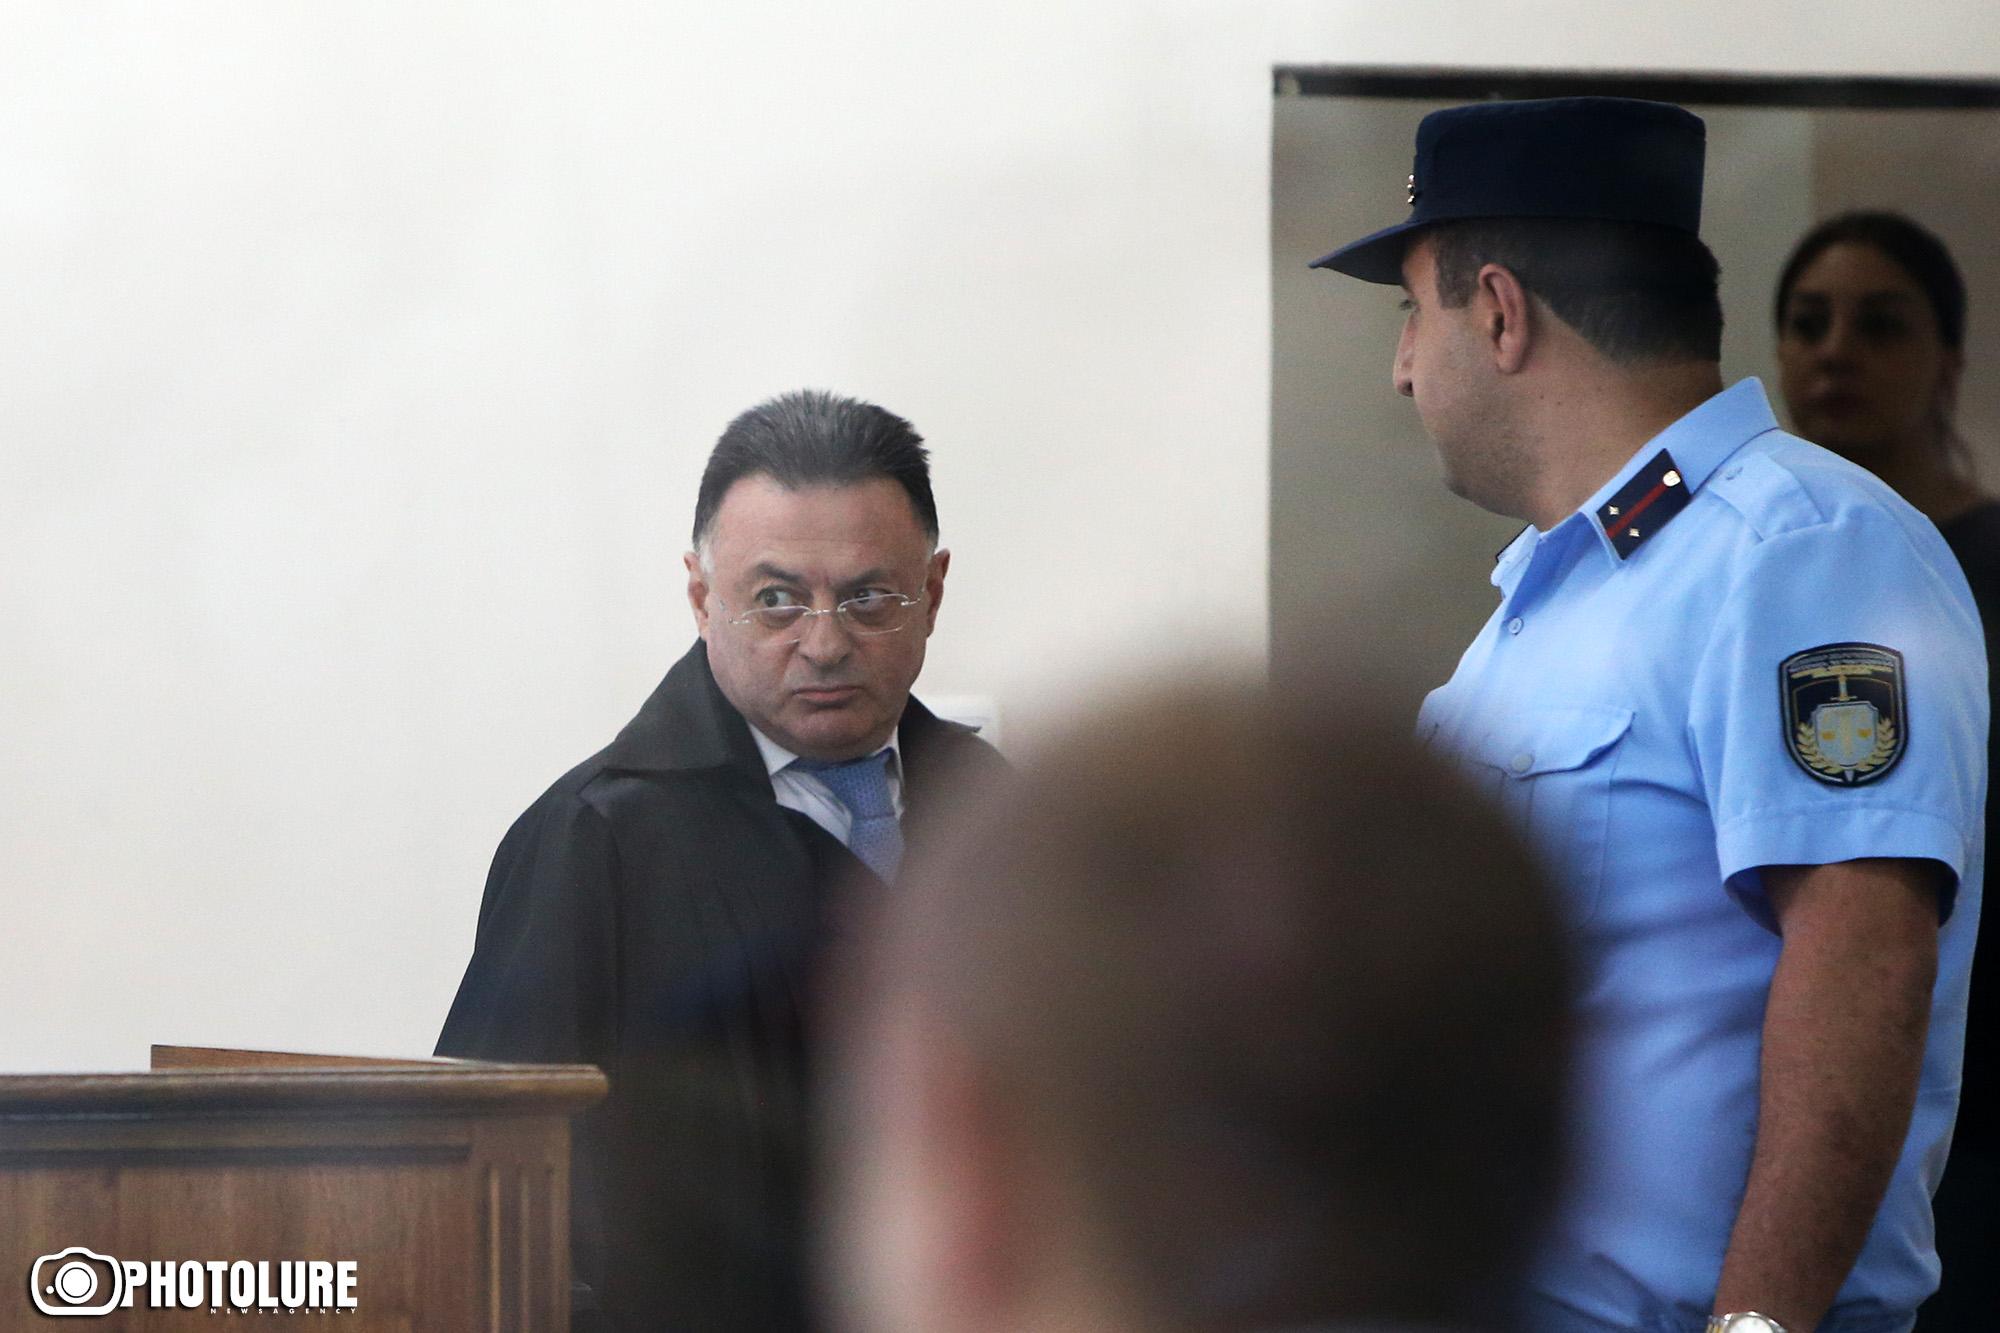 Խուզարկել են դատավորի աշխատասենյակը, որը կալանքից ազատել էր Քոչարյանին